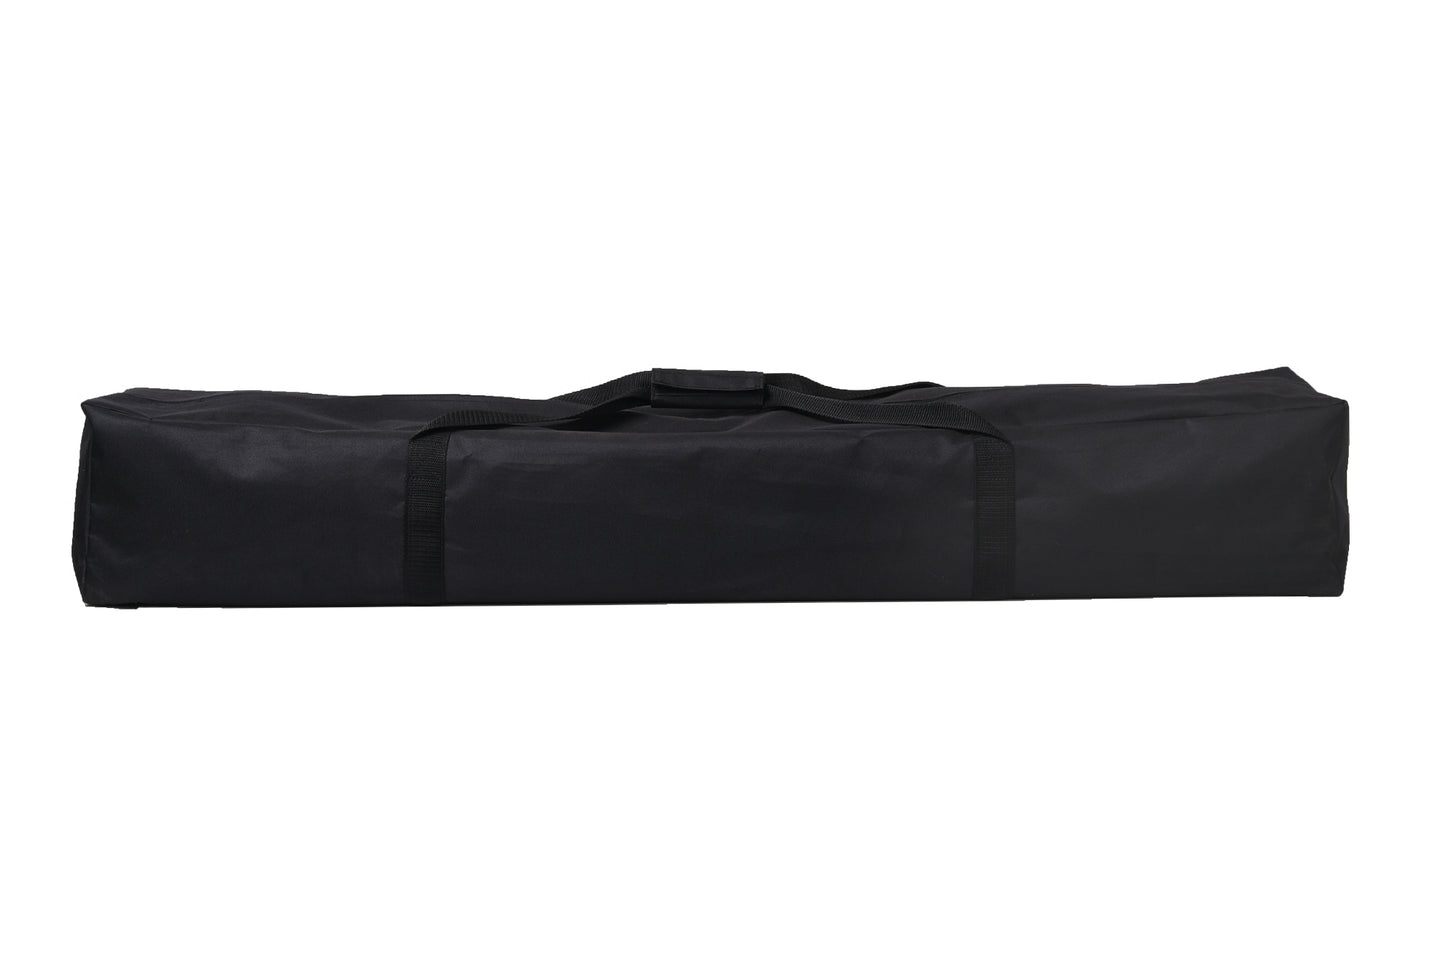 Hängematte mit Gestell Indoor & Outdoor - Hängemattengestell 250cm, Belastbarkeit bis 210 kg - inklusive Nylon-Hängematte schwarz/weiß